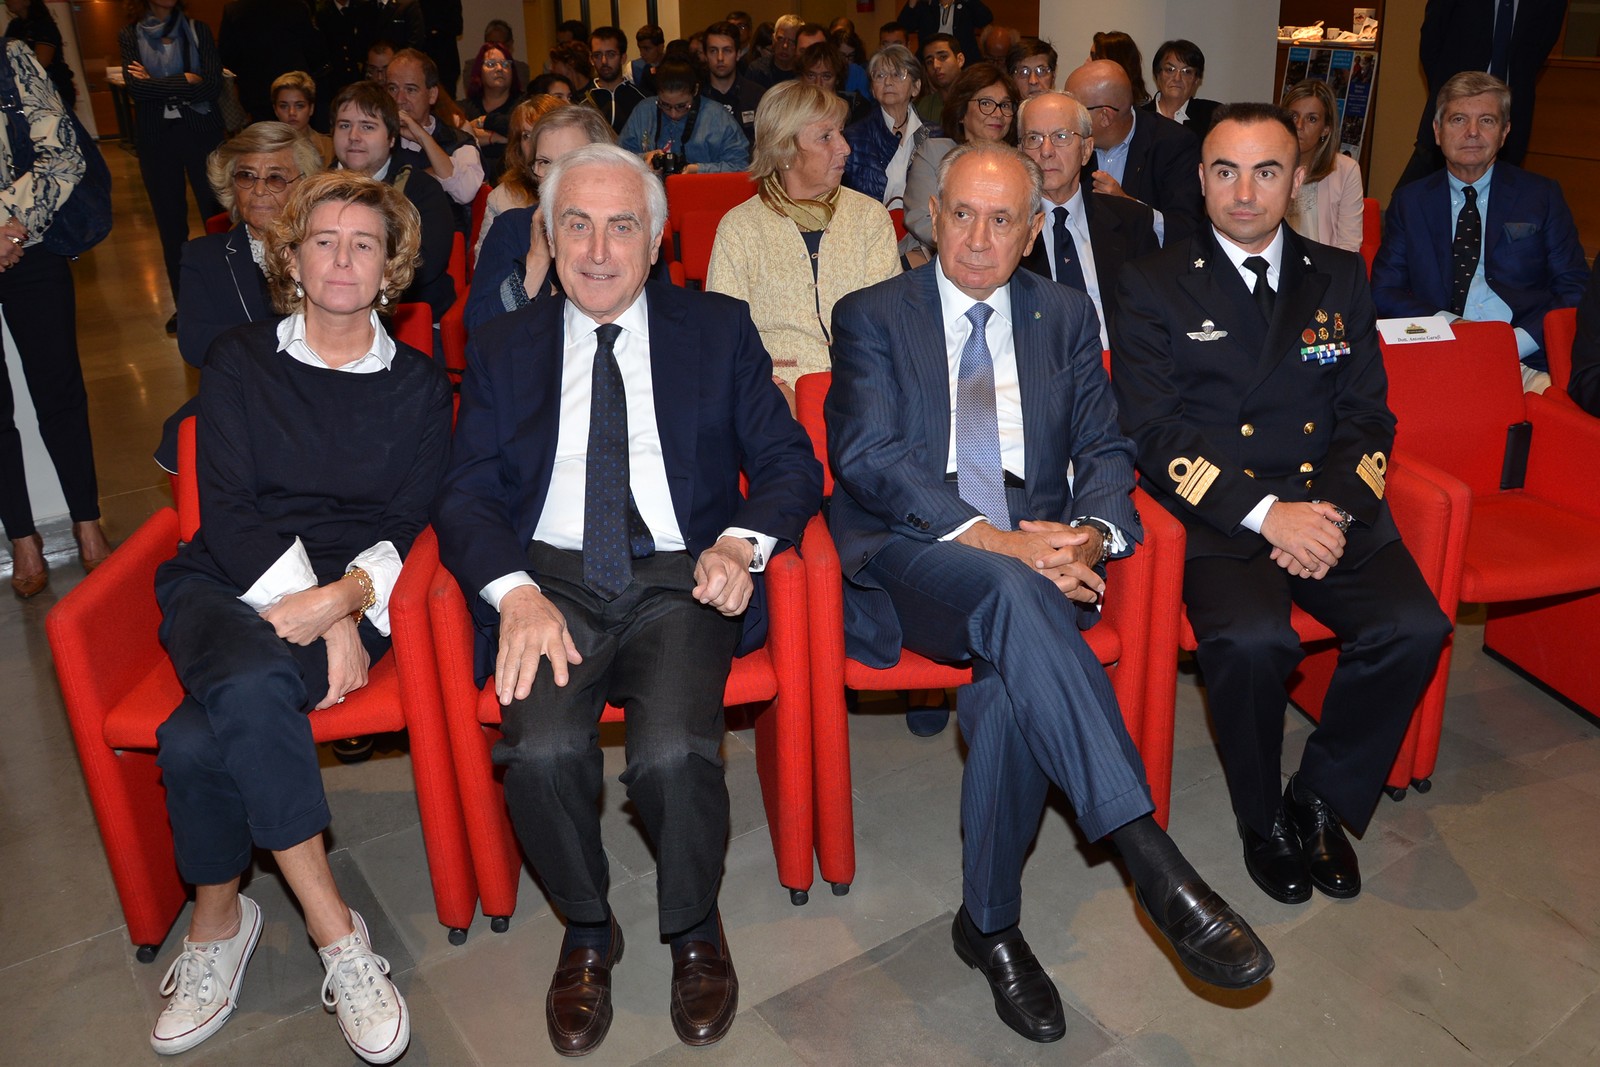 Un momento della cerimonia per il 10° anniversario della Fondazione Tender to Nave Italia